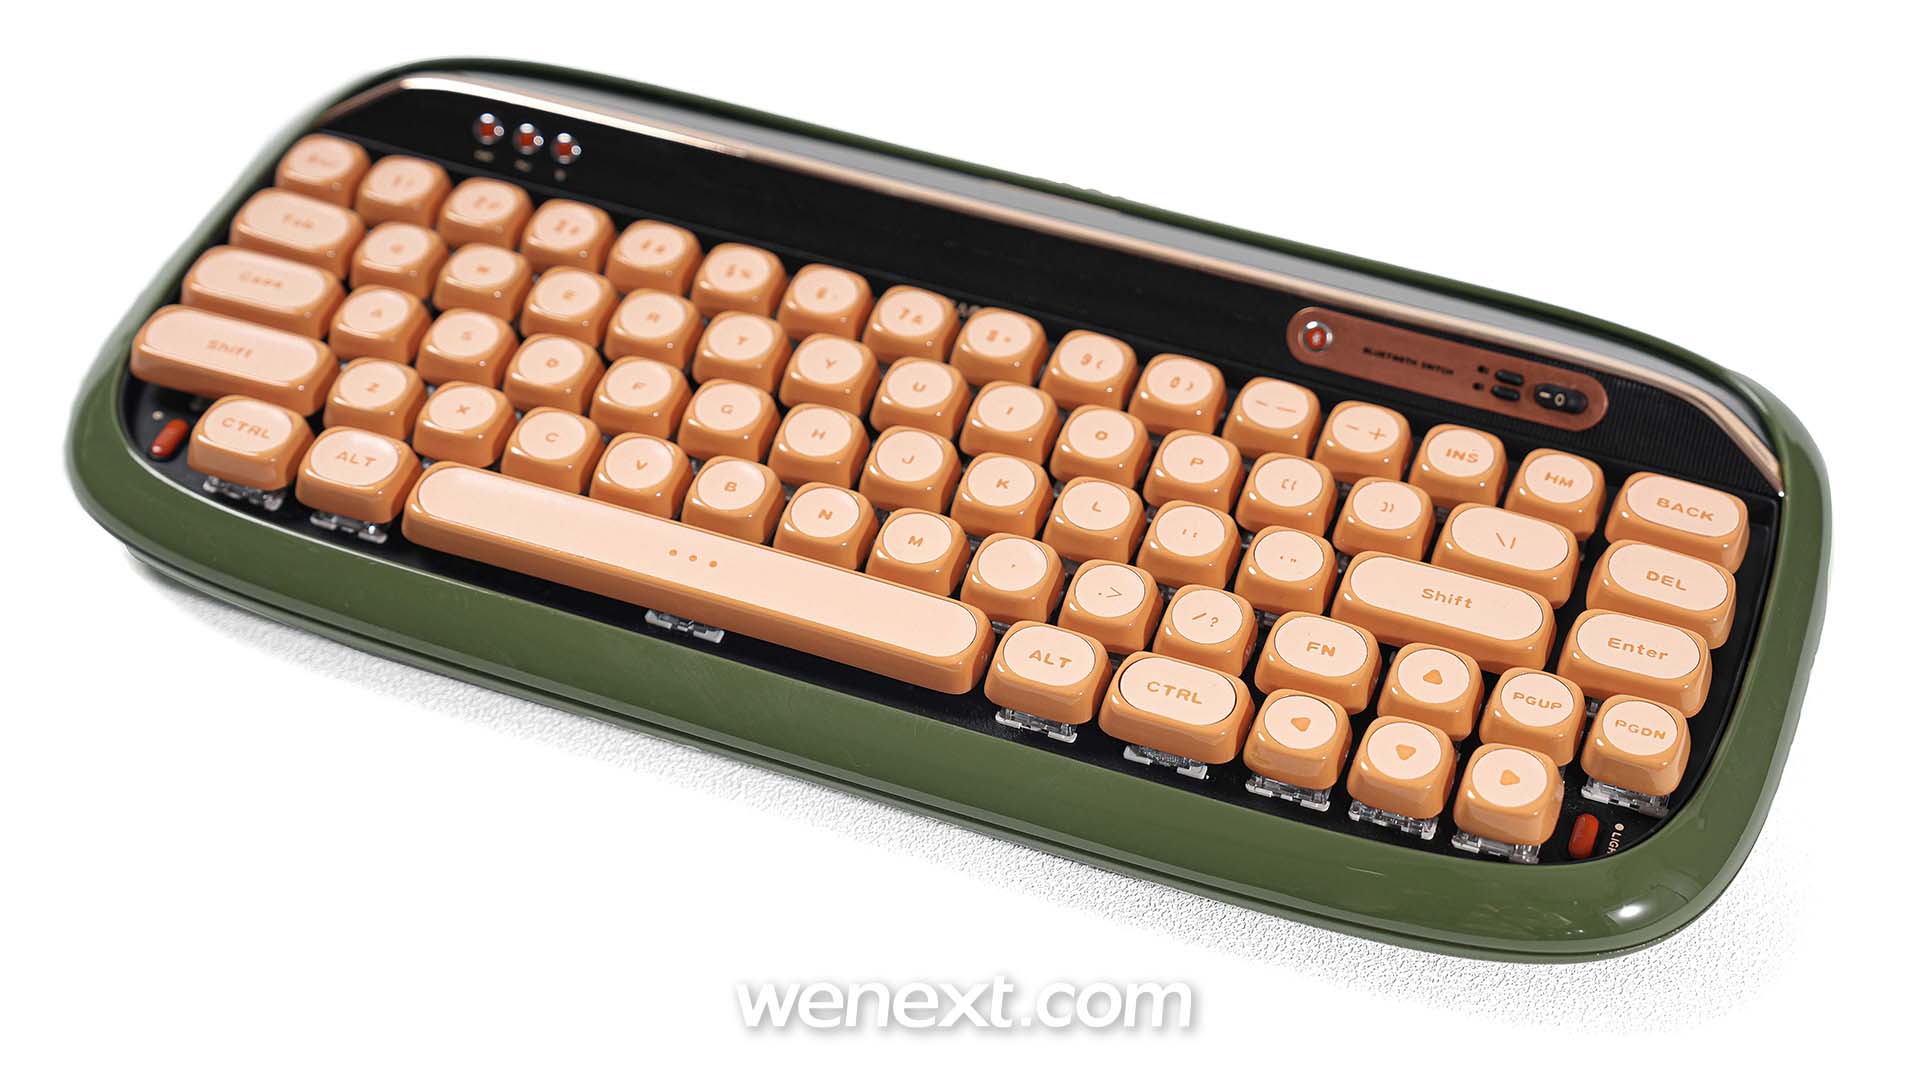 3d printed keycap, 3d printing keyboard, 3d printed mechanical keyboard